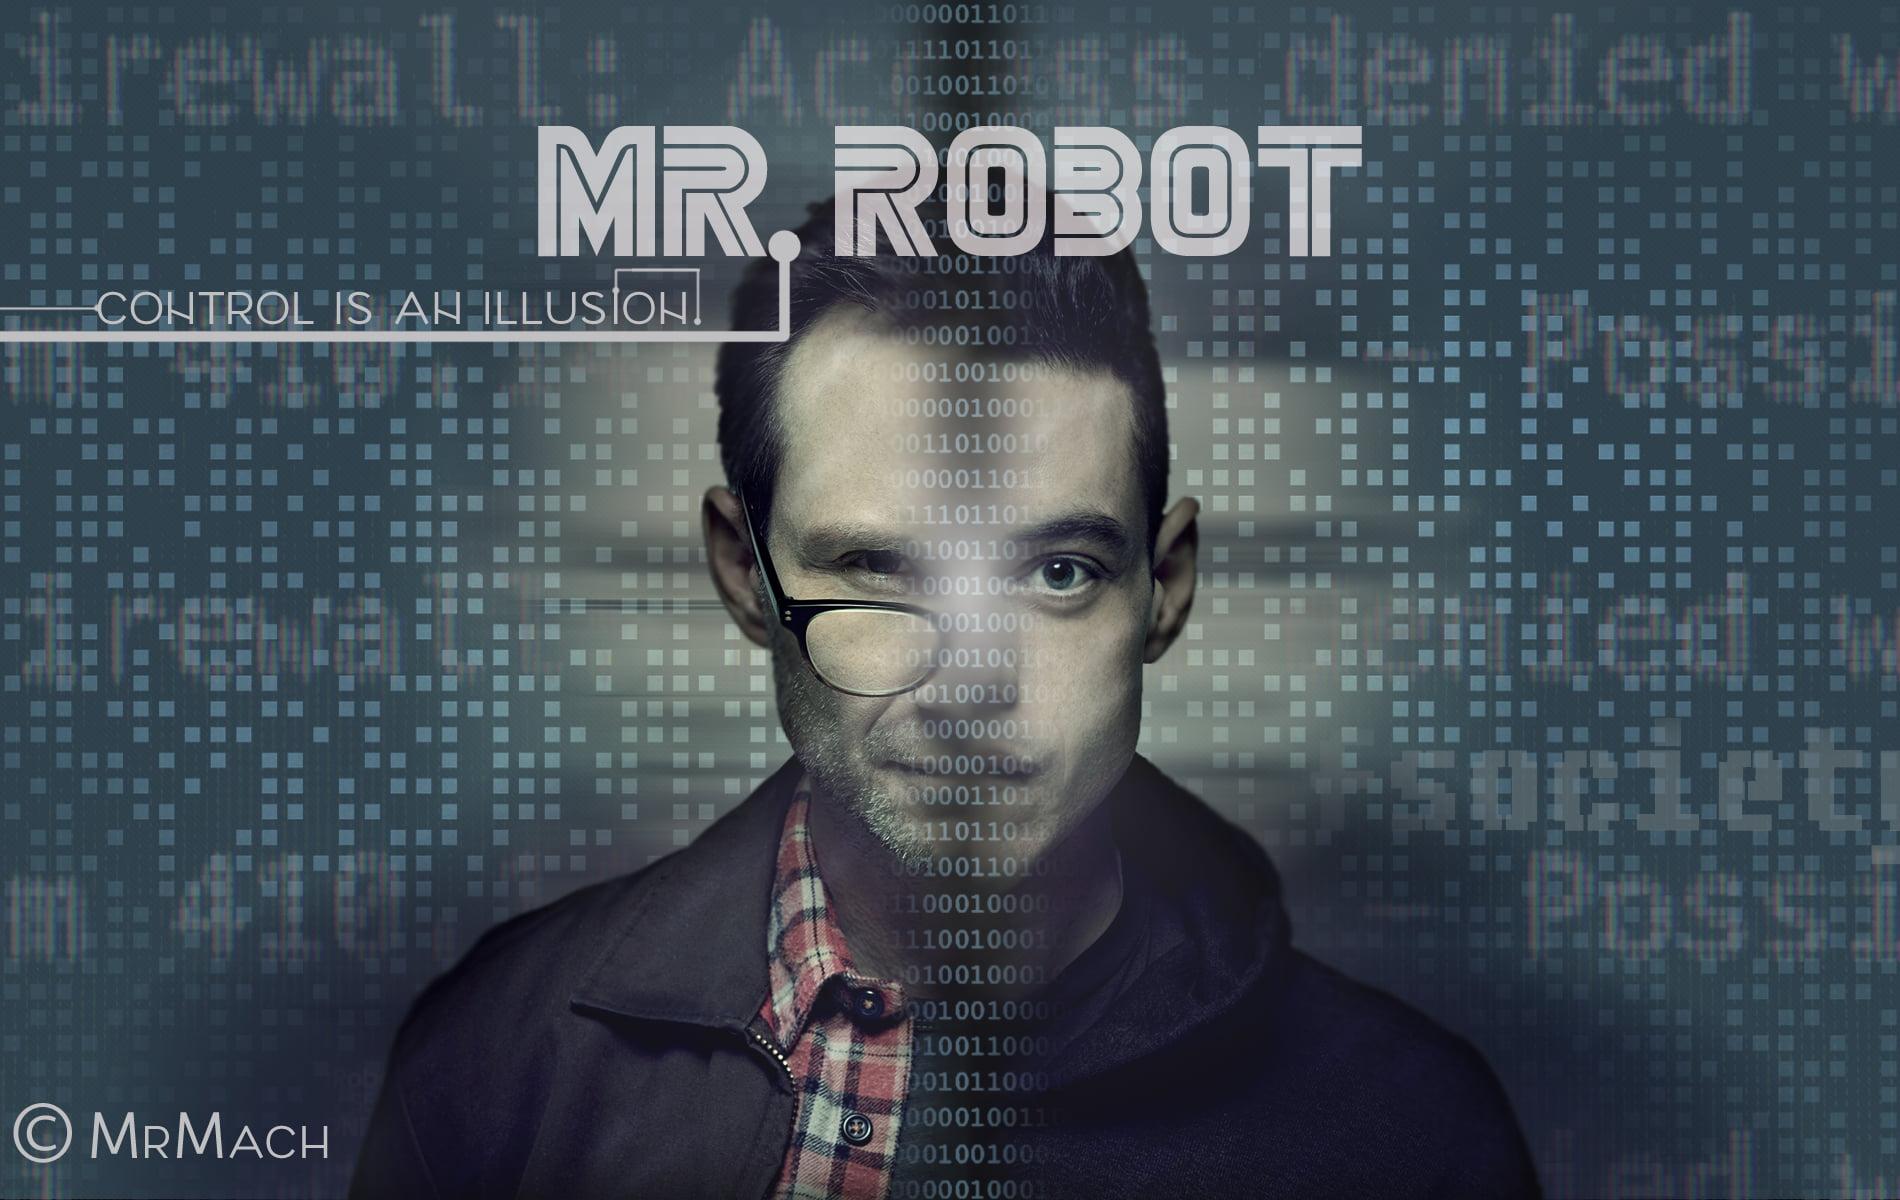 Mr. Robot poster, Mr. Robot, Elliot (Mr. Robot), Christian Slater